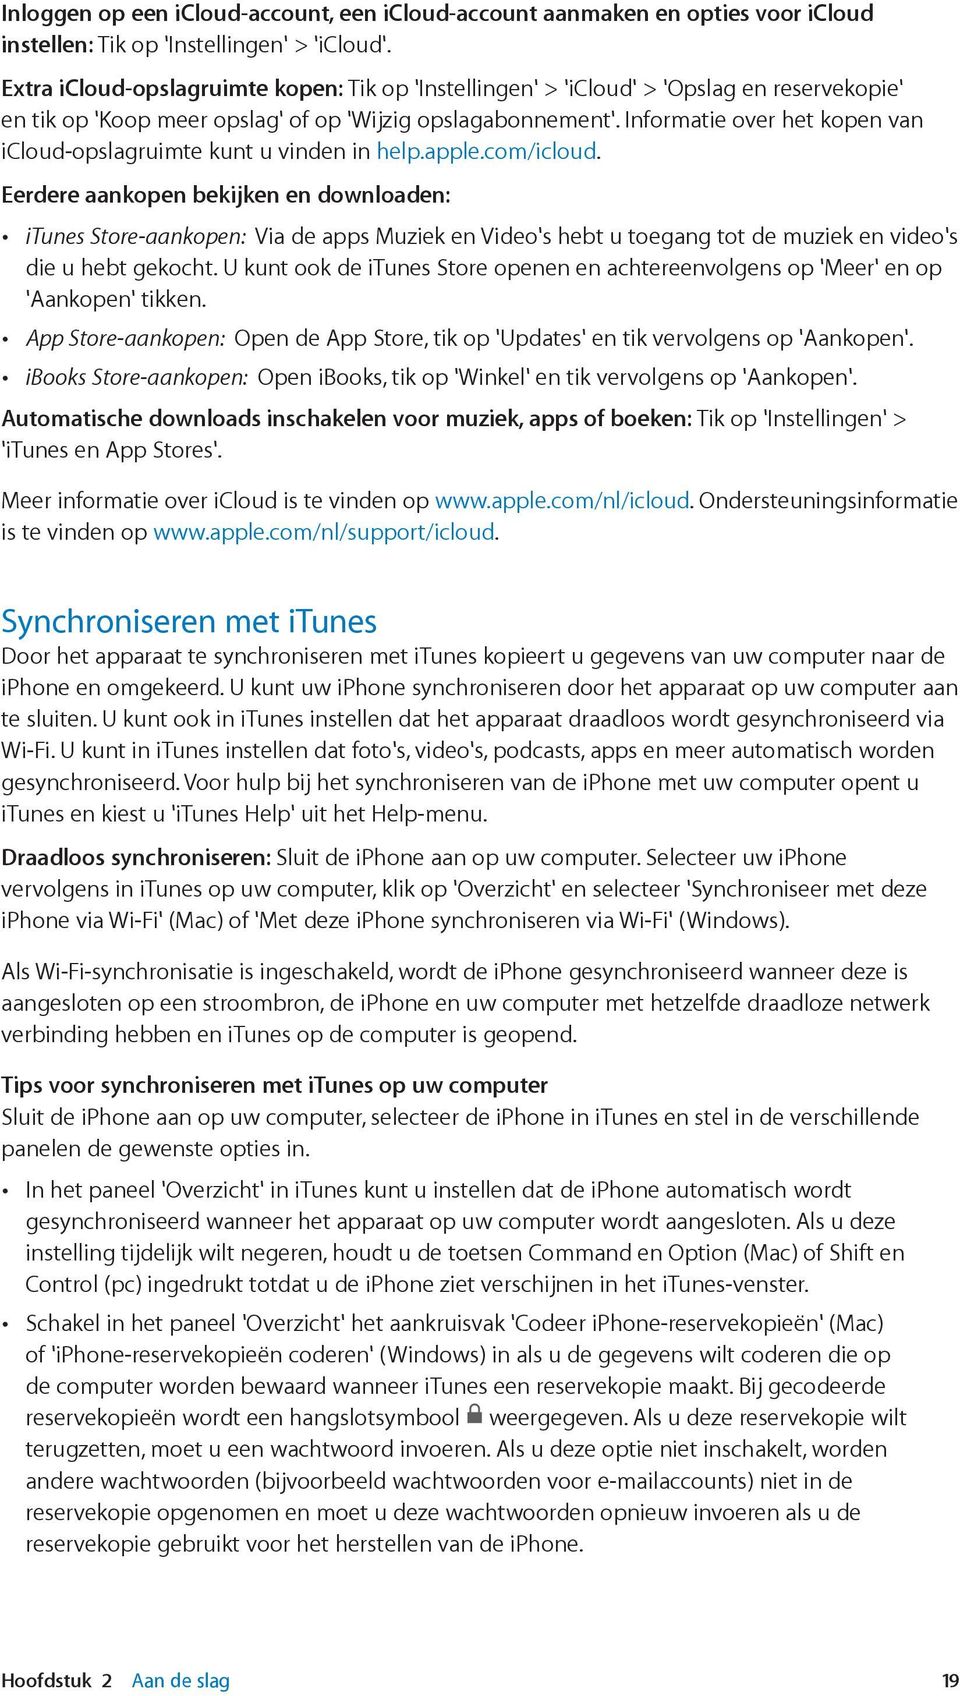 informatie over icloud is te vinden op www.apple.com/nl/icloud is te vinden op www.apple.com/nl/support/icloud.